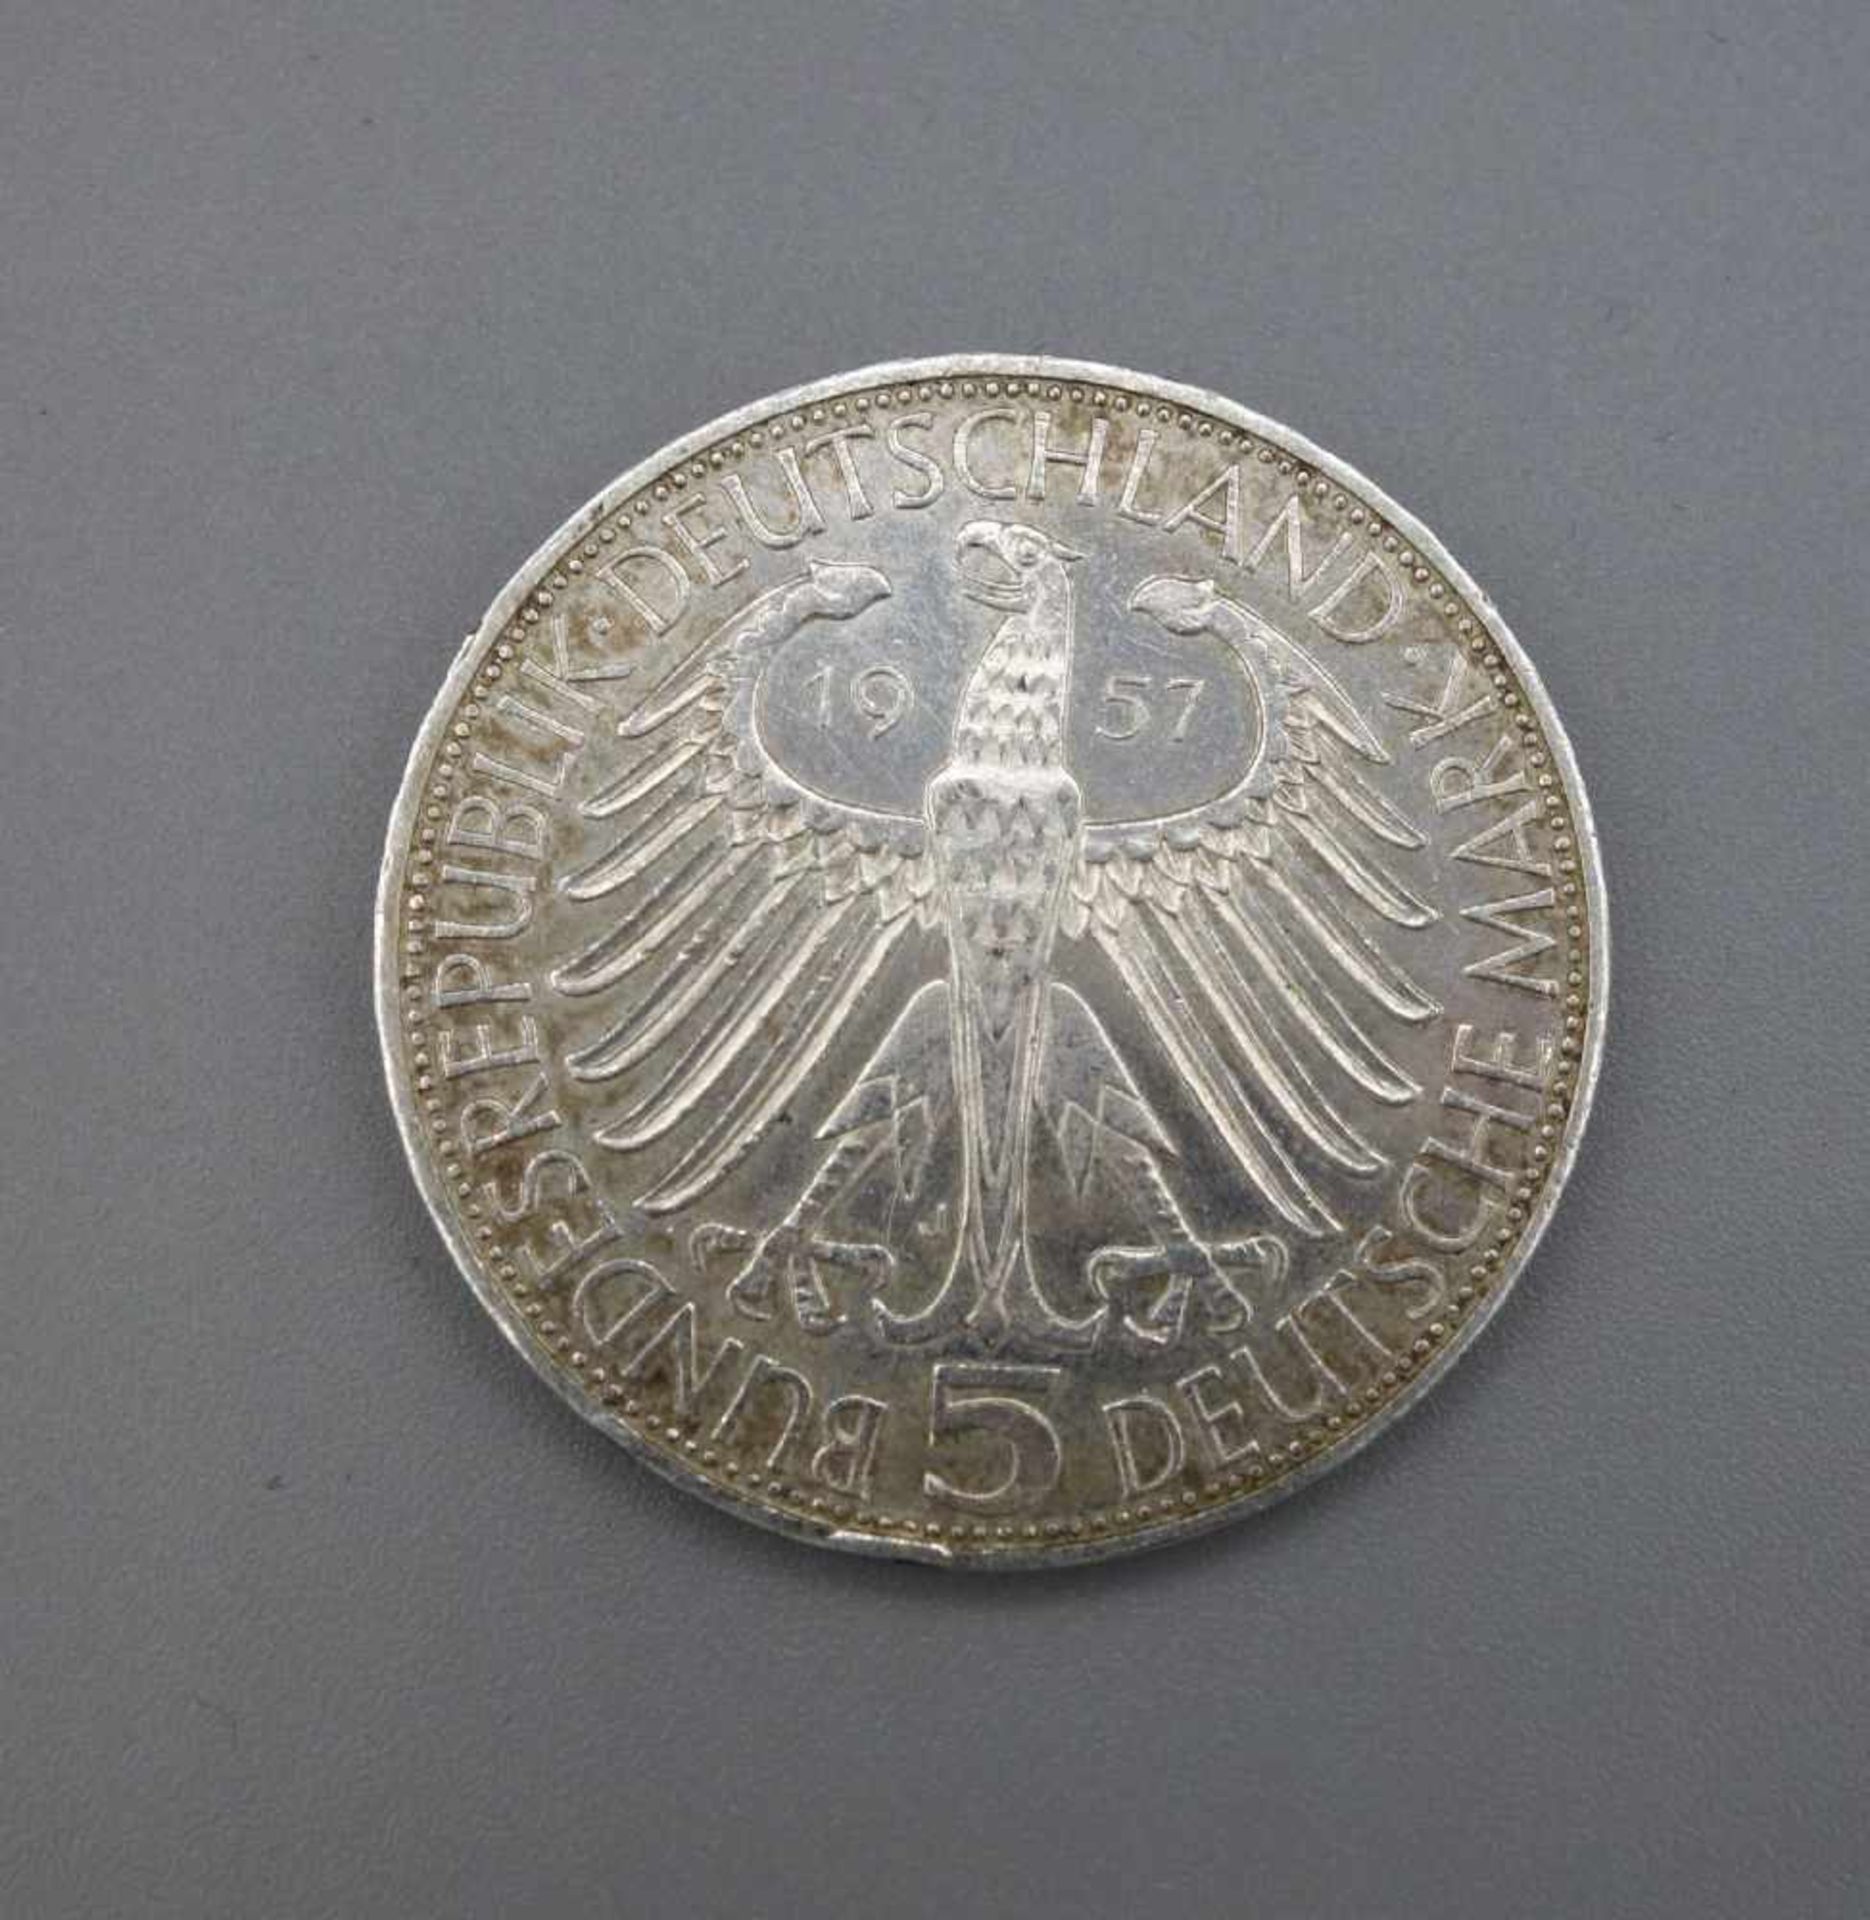 SILBERMÜNZE / GEDENKMÜNZE : 5 DM / Deutsche Mark, J, 1957. Joseph Freiherr von Eichendorff. D. 2,9